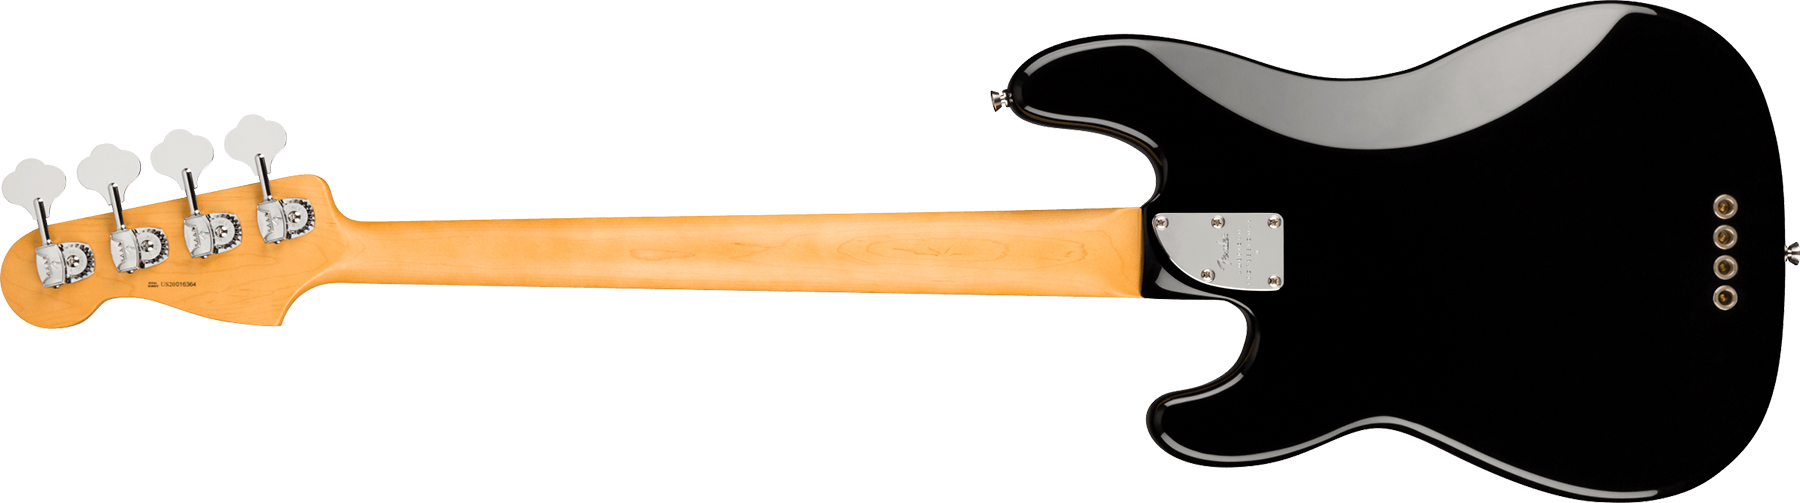 Fender Precision Bass American Professional Ii Usa Mn - Black - Bajo eléctrico de cuerpo sólido - Variation 1